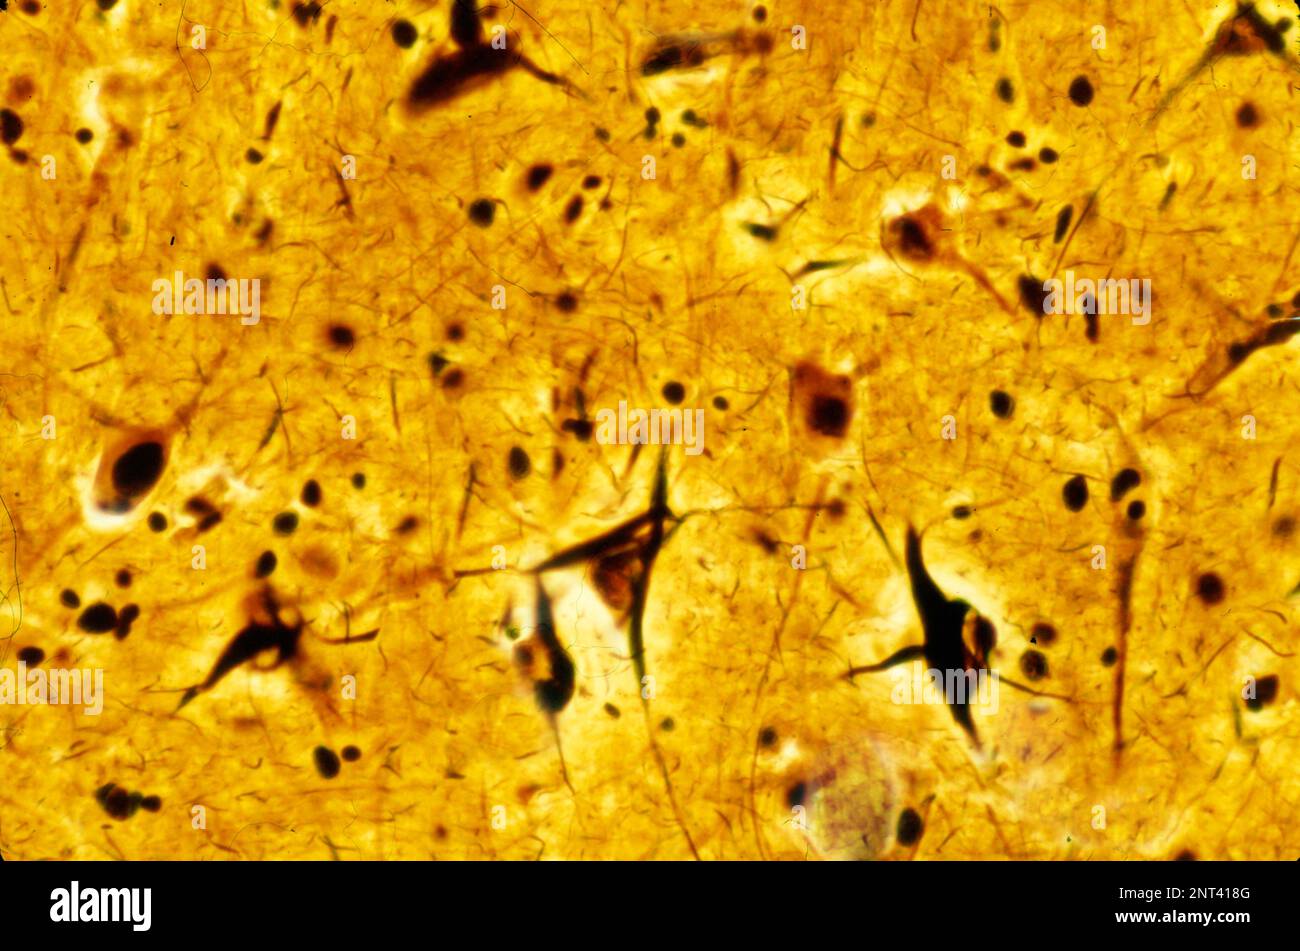 Lichtmikrographische Darstellung einer menschlichen Hirnrinde mit neurofibrillierenden Verwicklungen in mehreren Pyramidenneuronen. Neurofibrillen (NFTs) sind ein Charakt Stockfoto